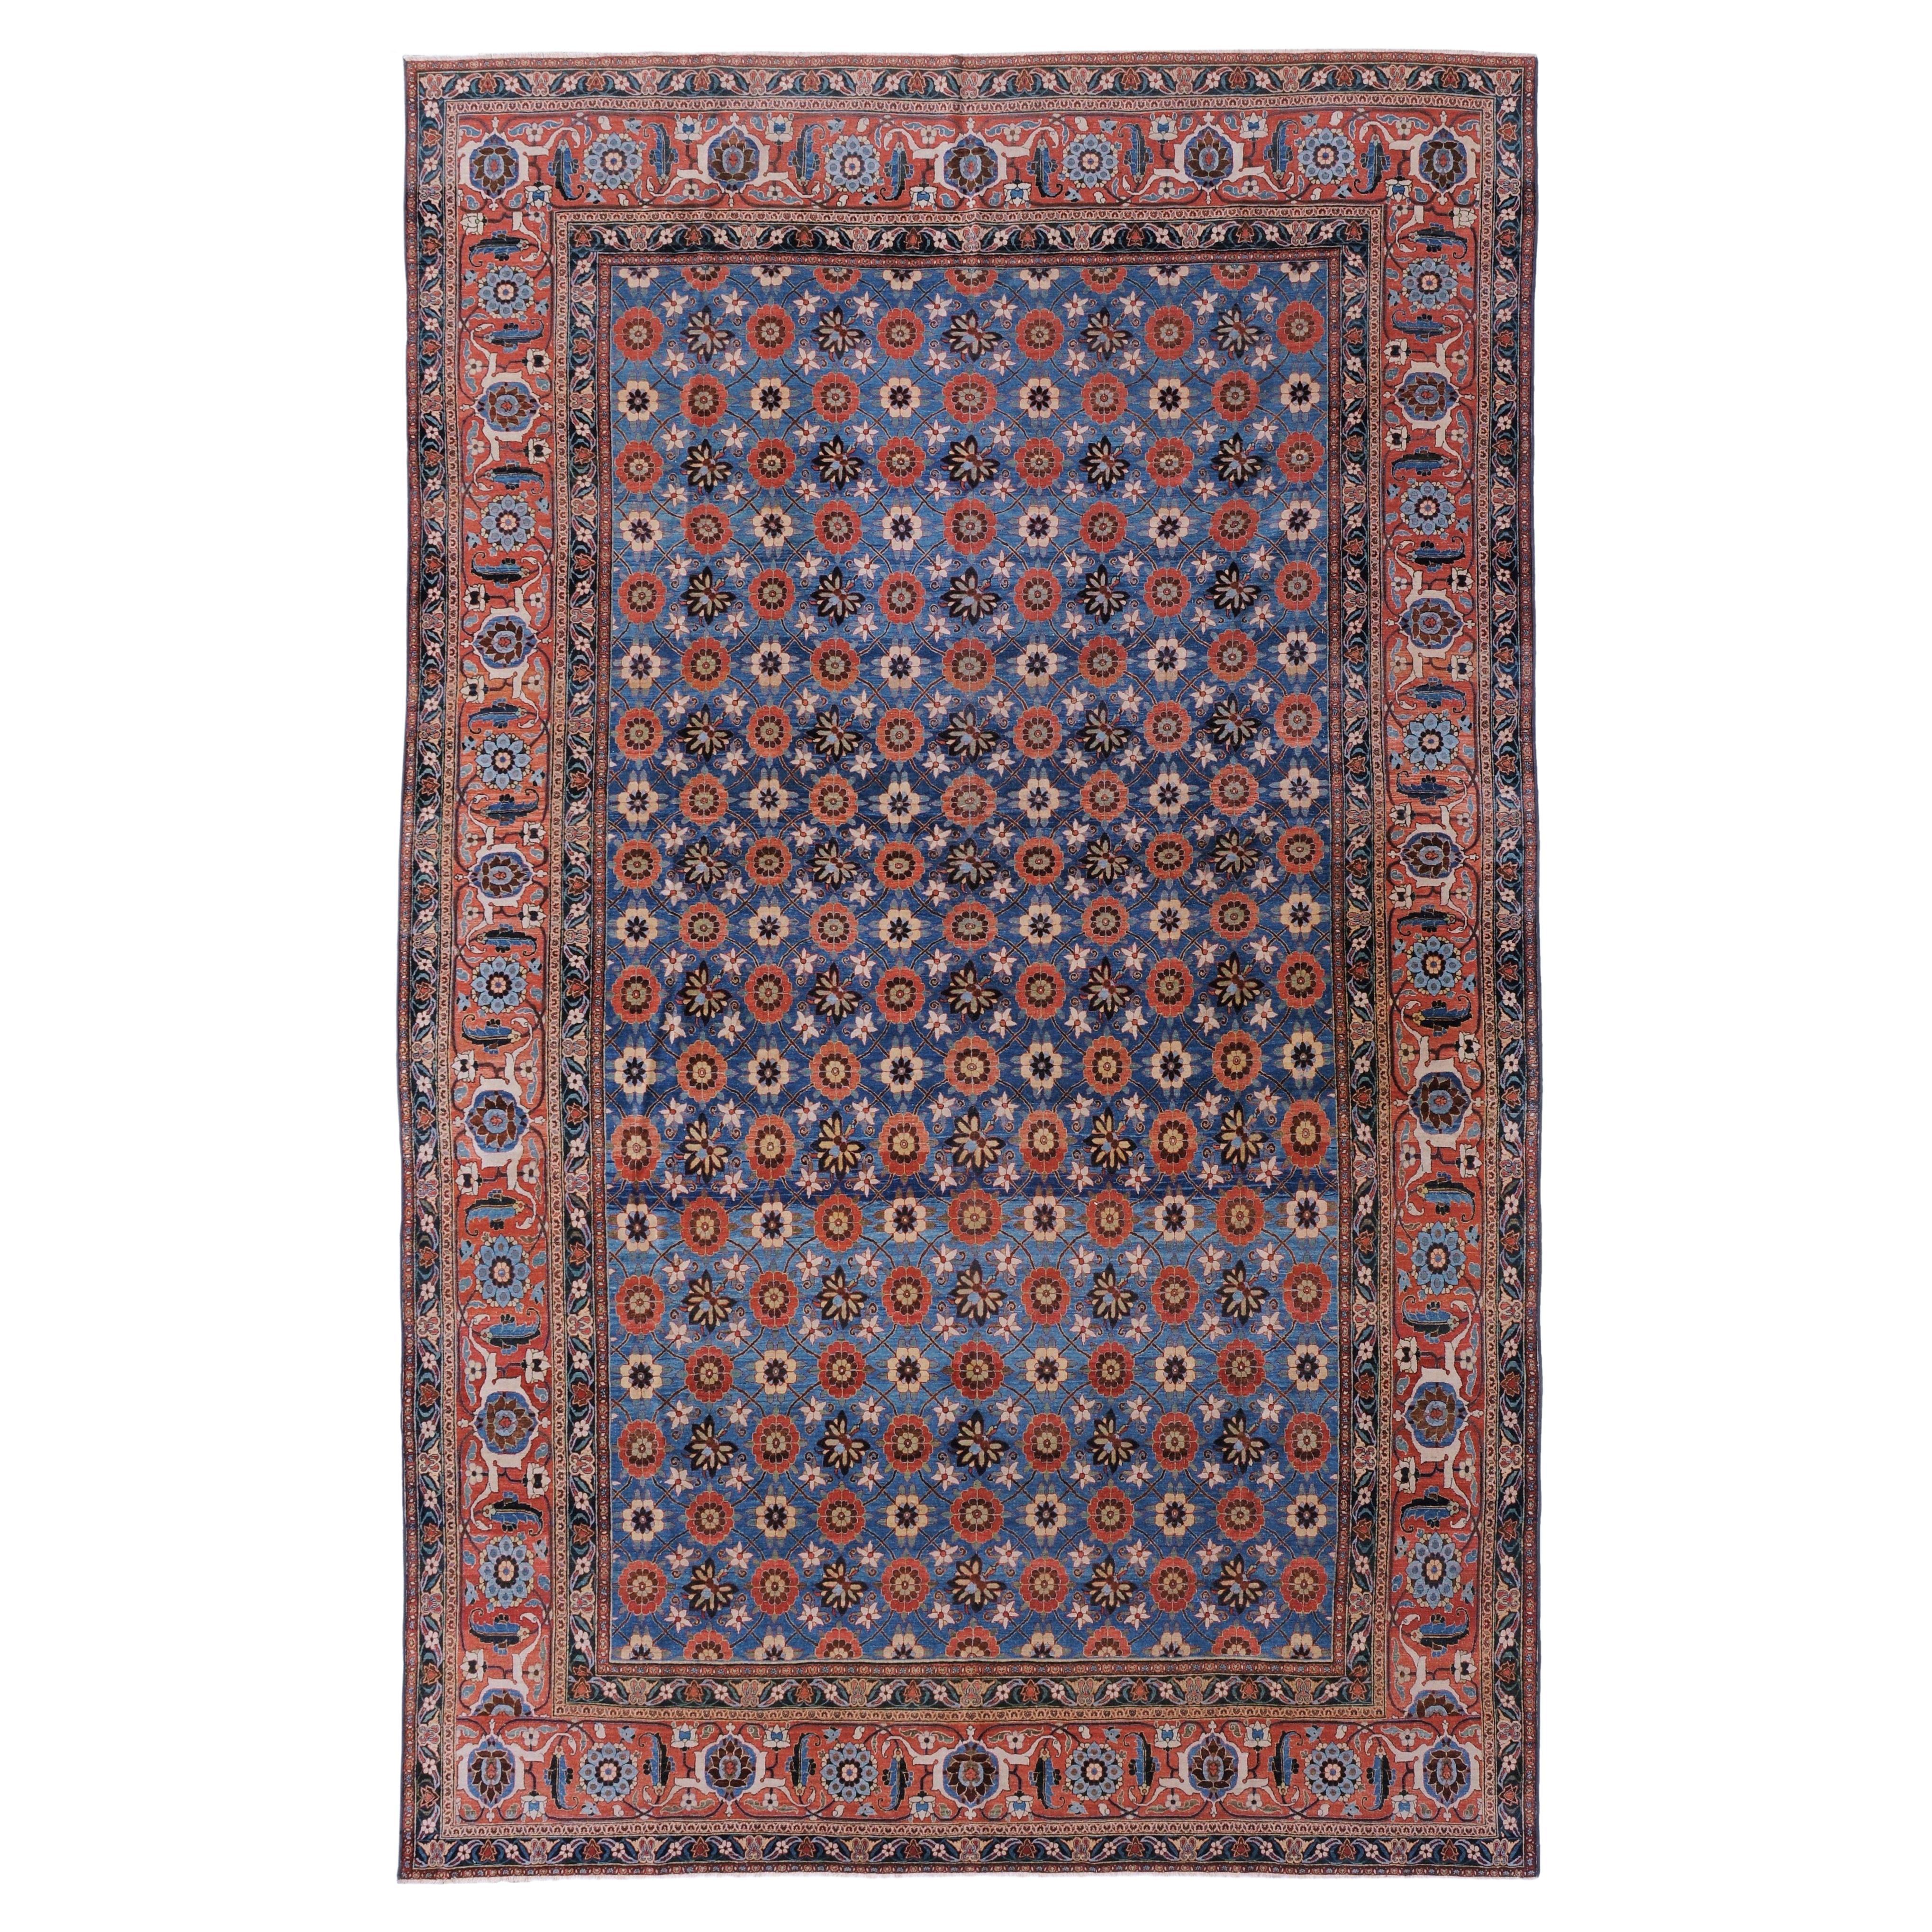 Early 20th Century Veramin Carpet, Central Persia